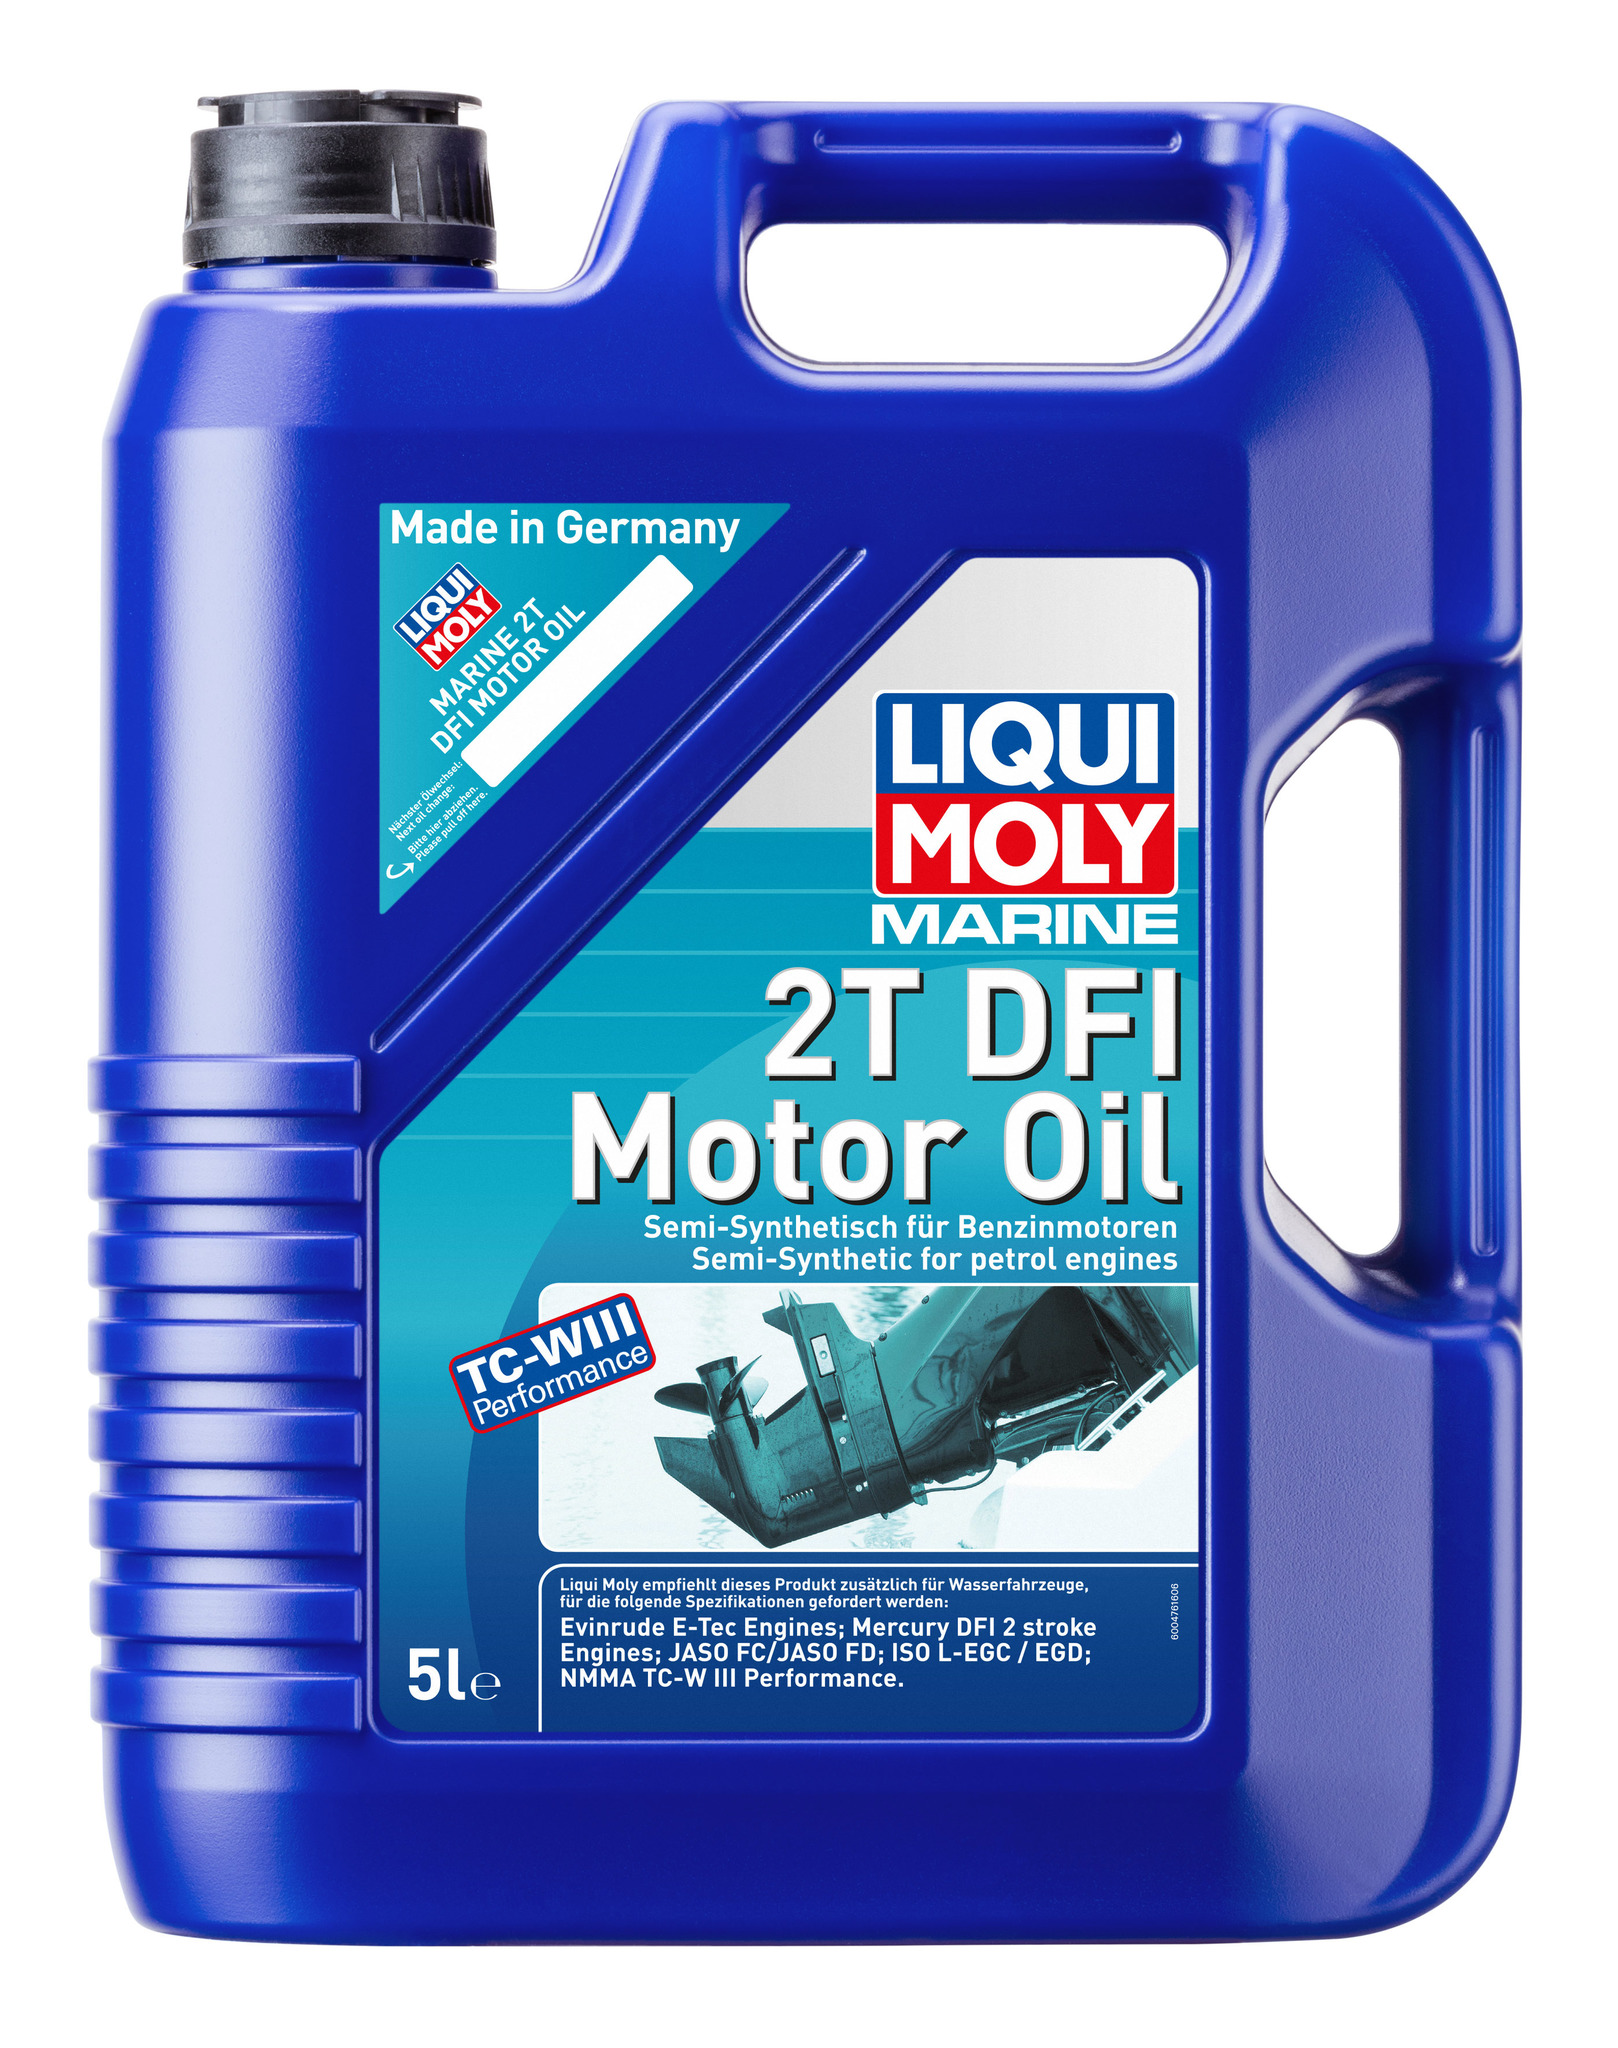 Liqui Moly Marine 2T DFI Motor Oil  Полусинтетическое моторное масло для водной техники